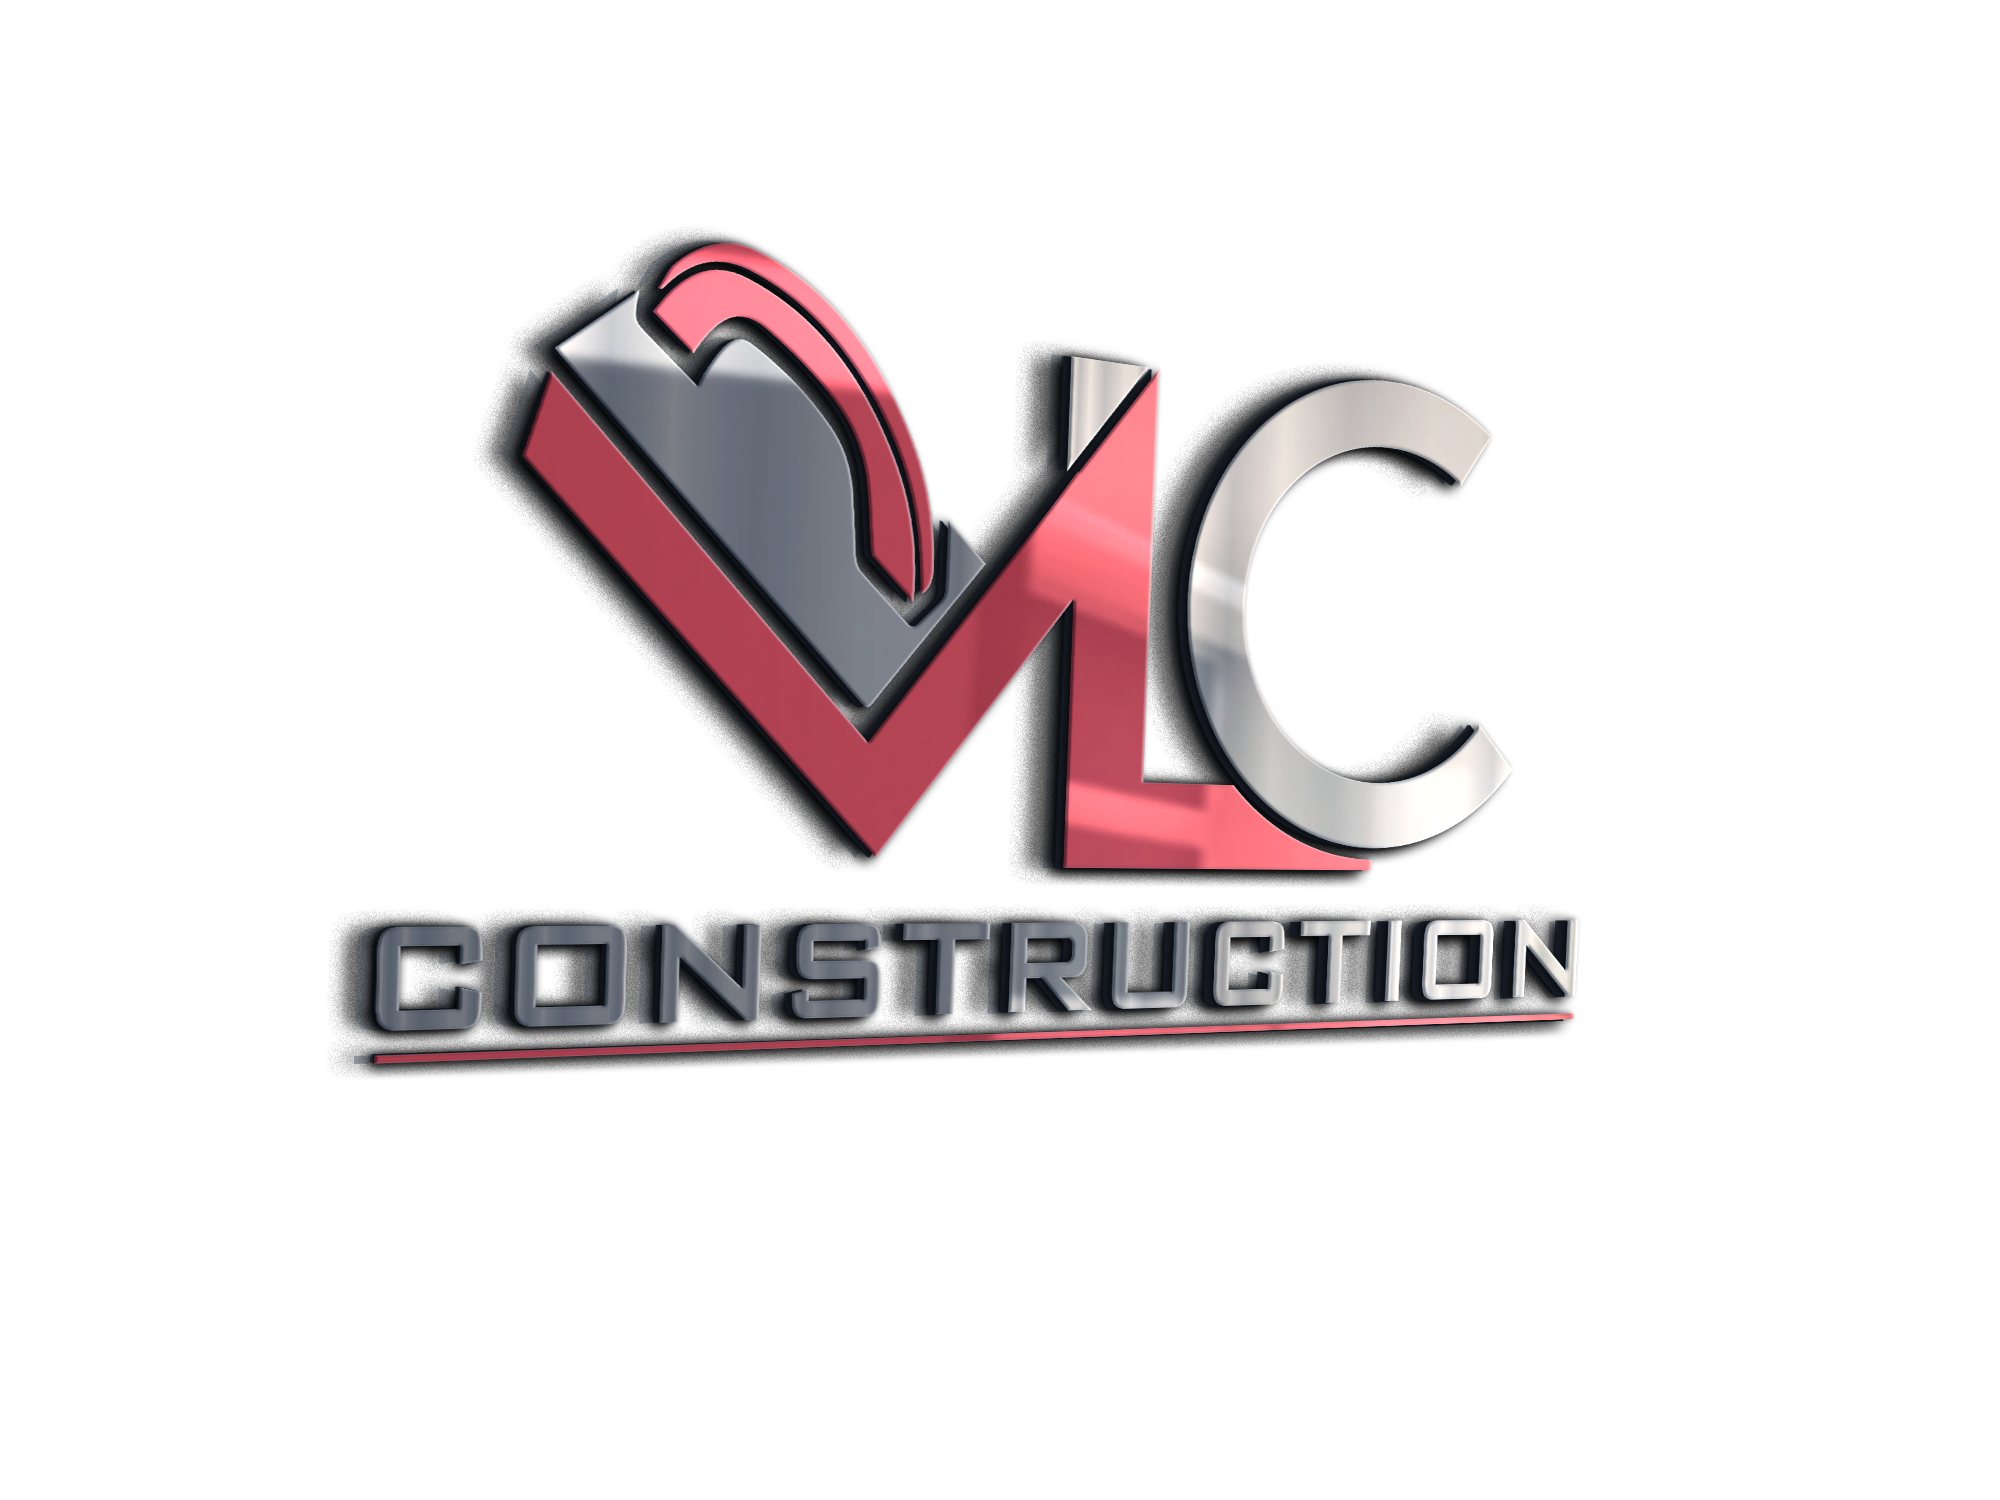 VLC Construction Logo